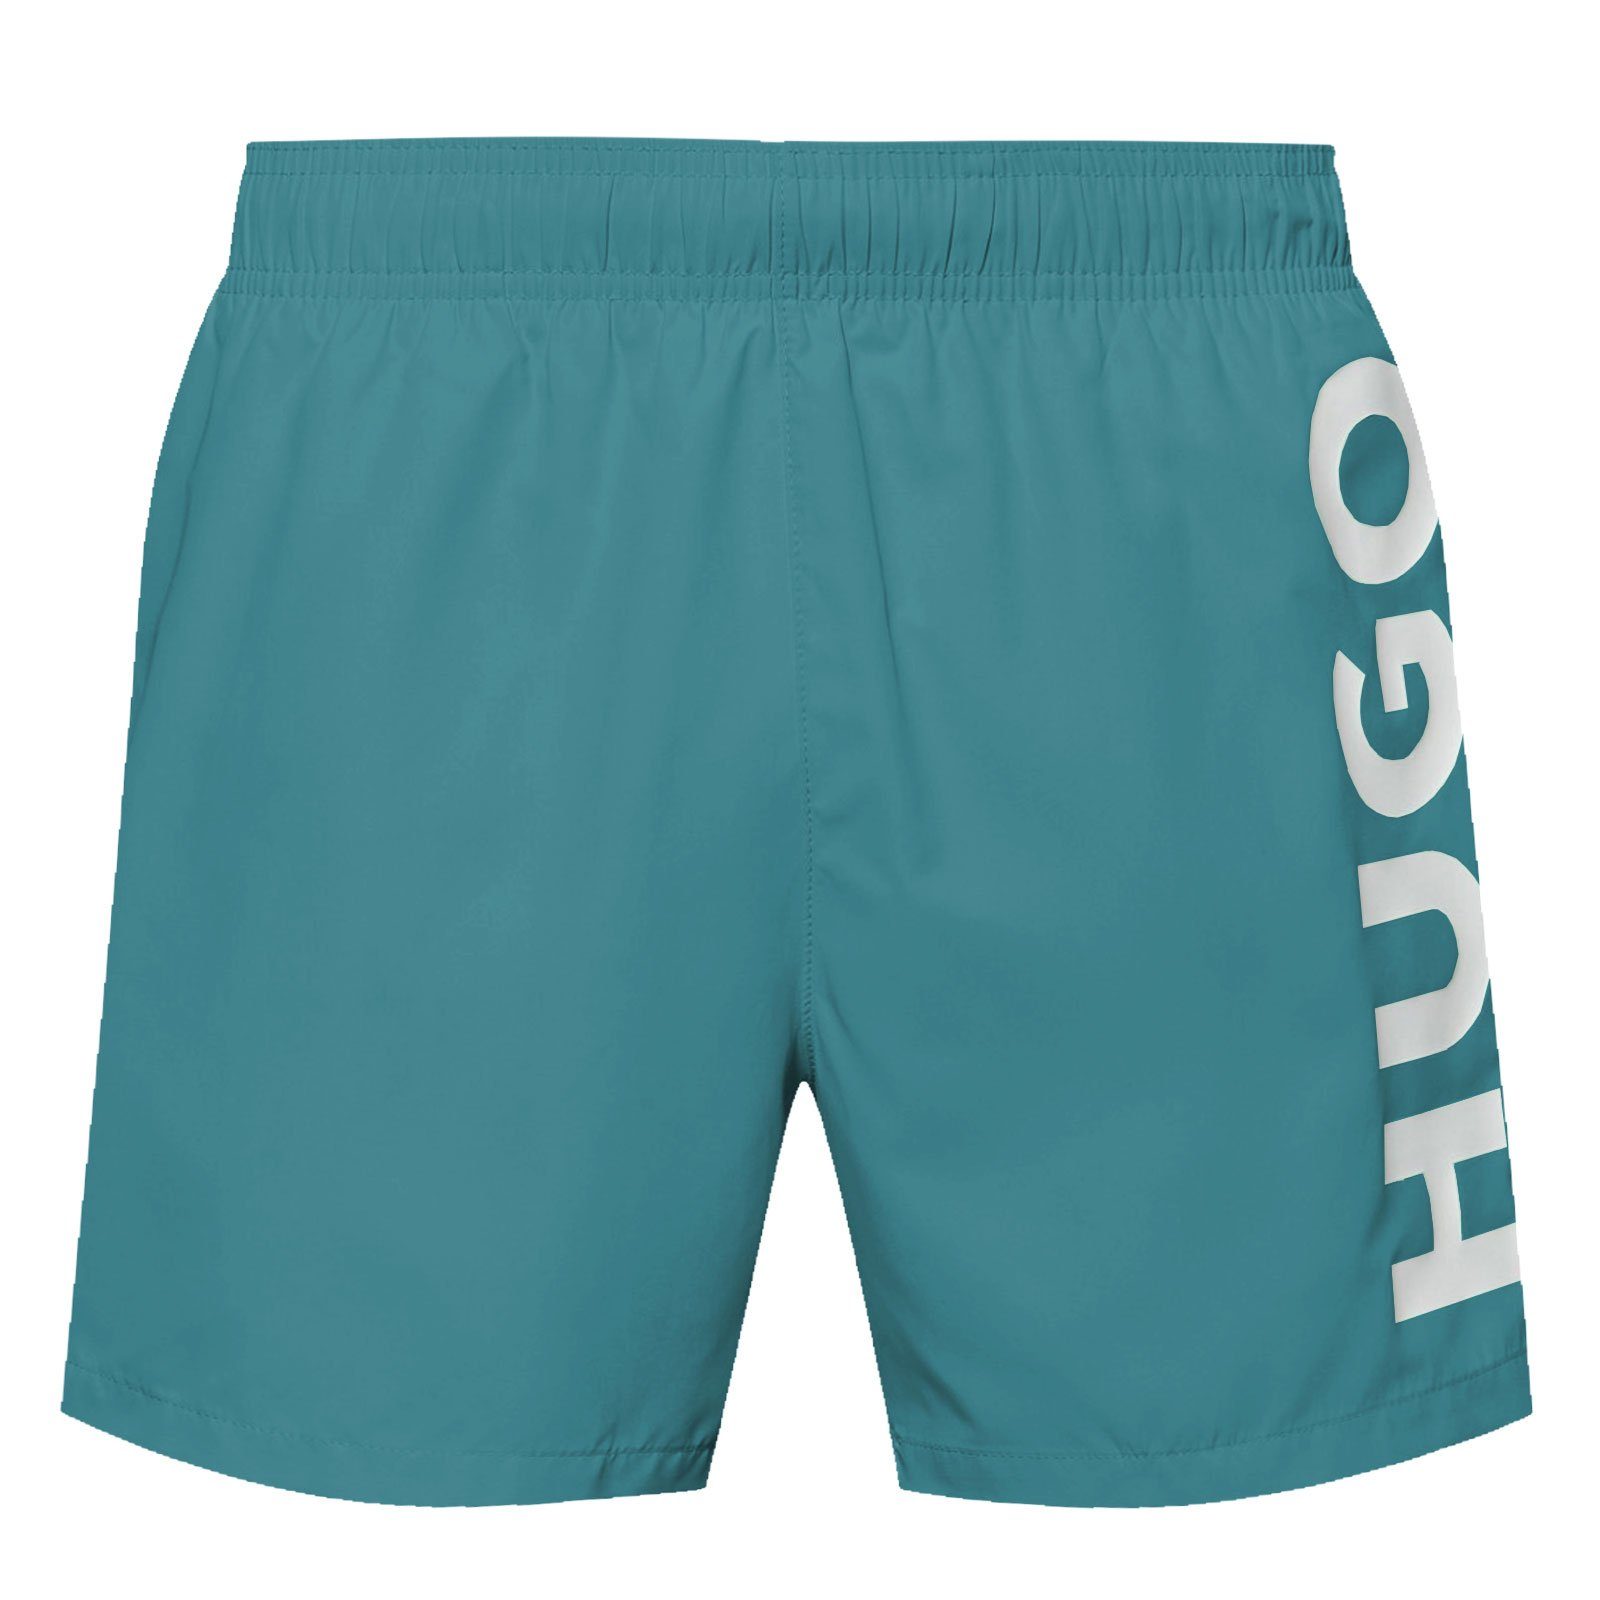 HUGO Badeshorts ABAS mit großem Markenschriftzug auf dem linken Bein 448 turquoise / aqua